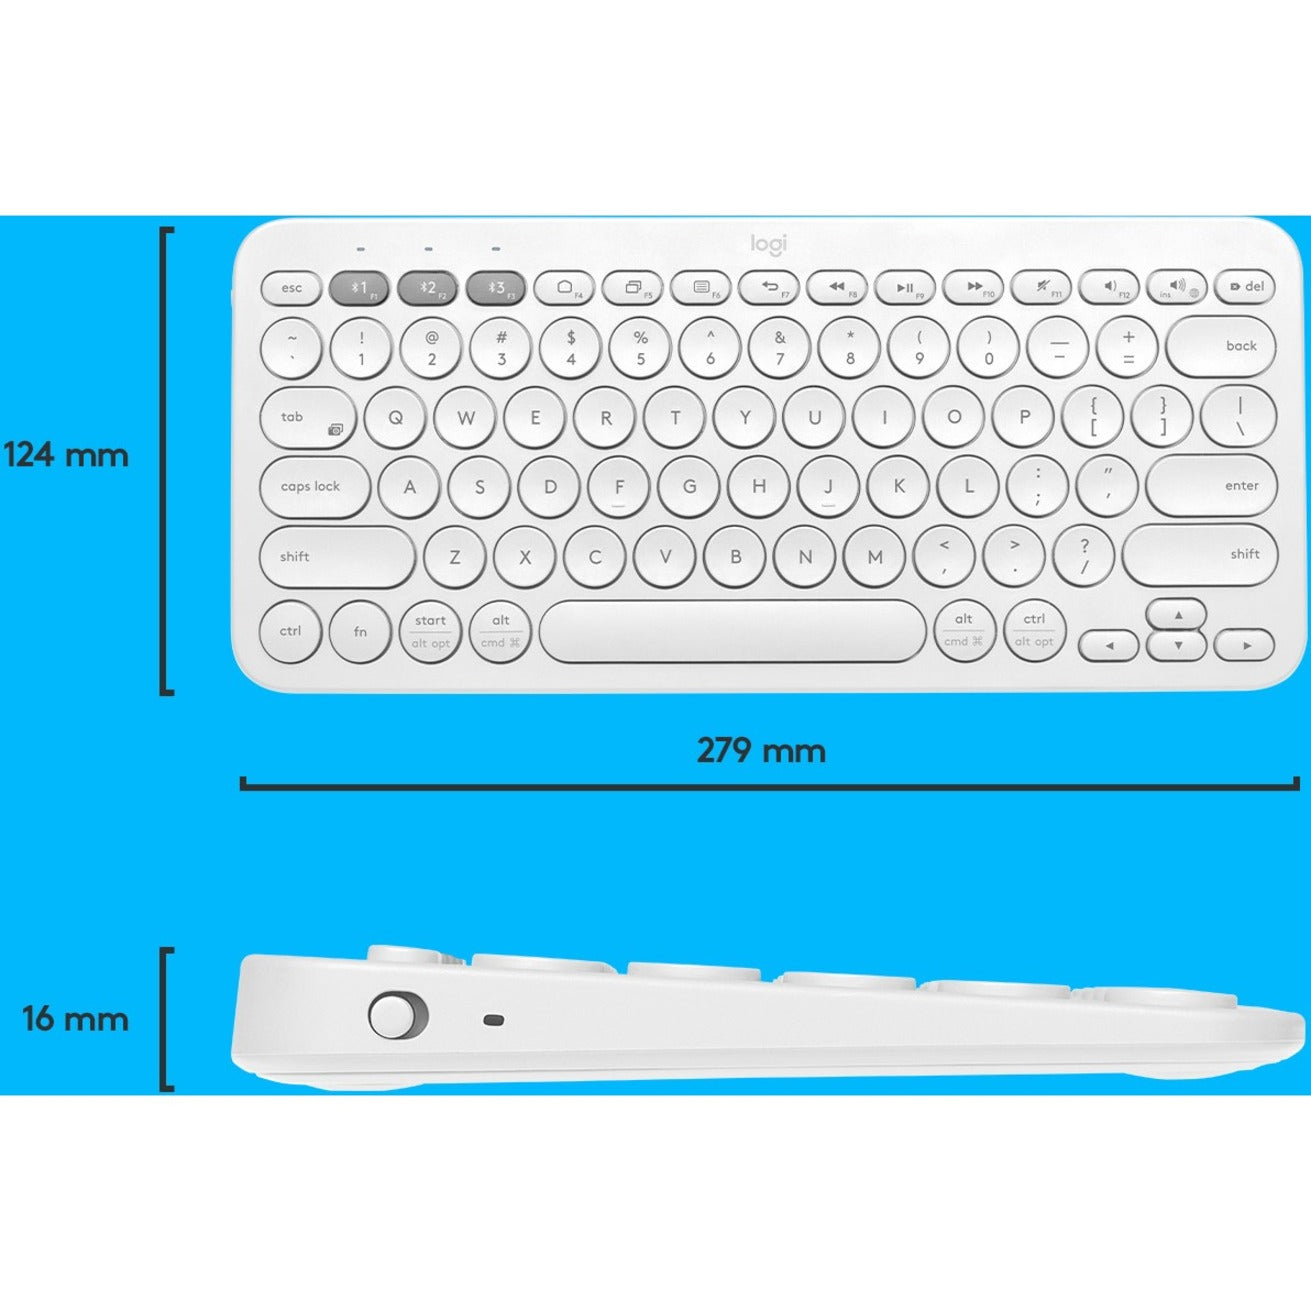 Logitech 920-009600 K380 Multi-device Bluetooth Keyboard, Lightweight, Low-profile Keys, Slim, Quiet Keys